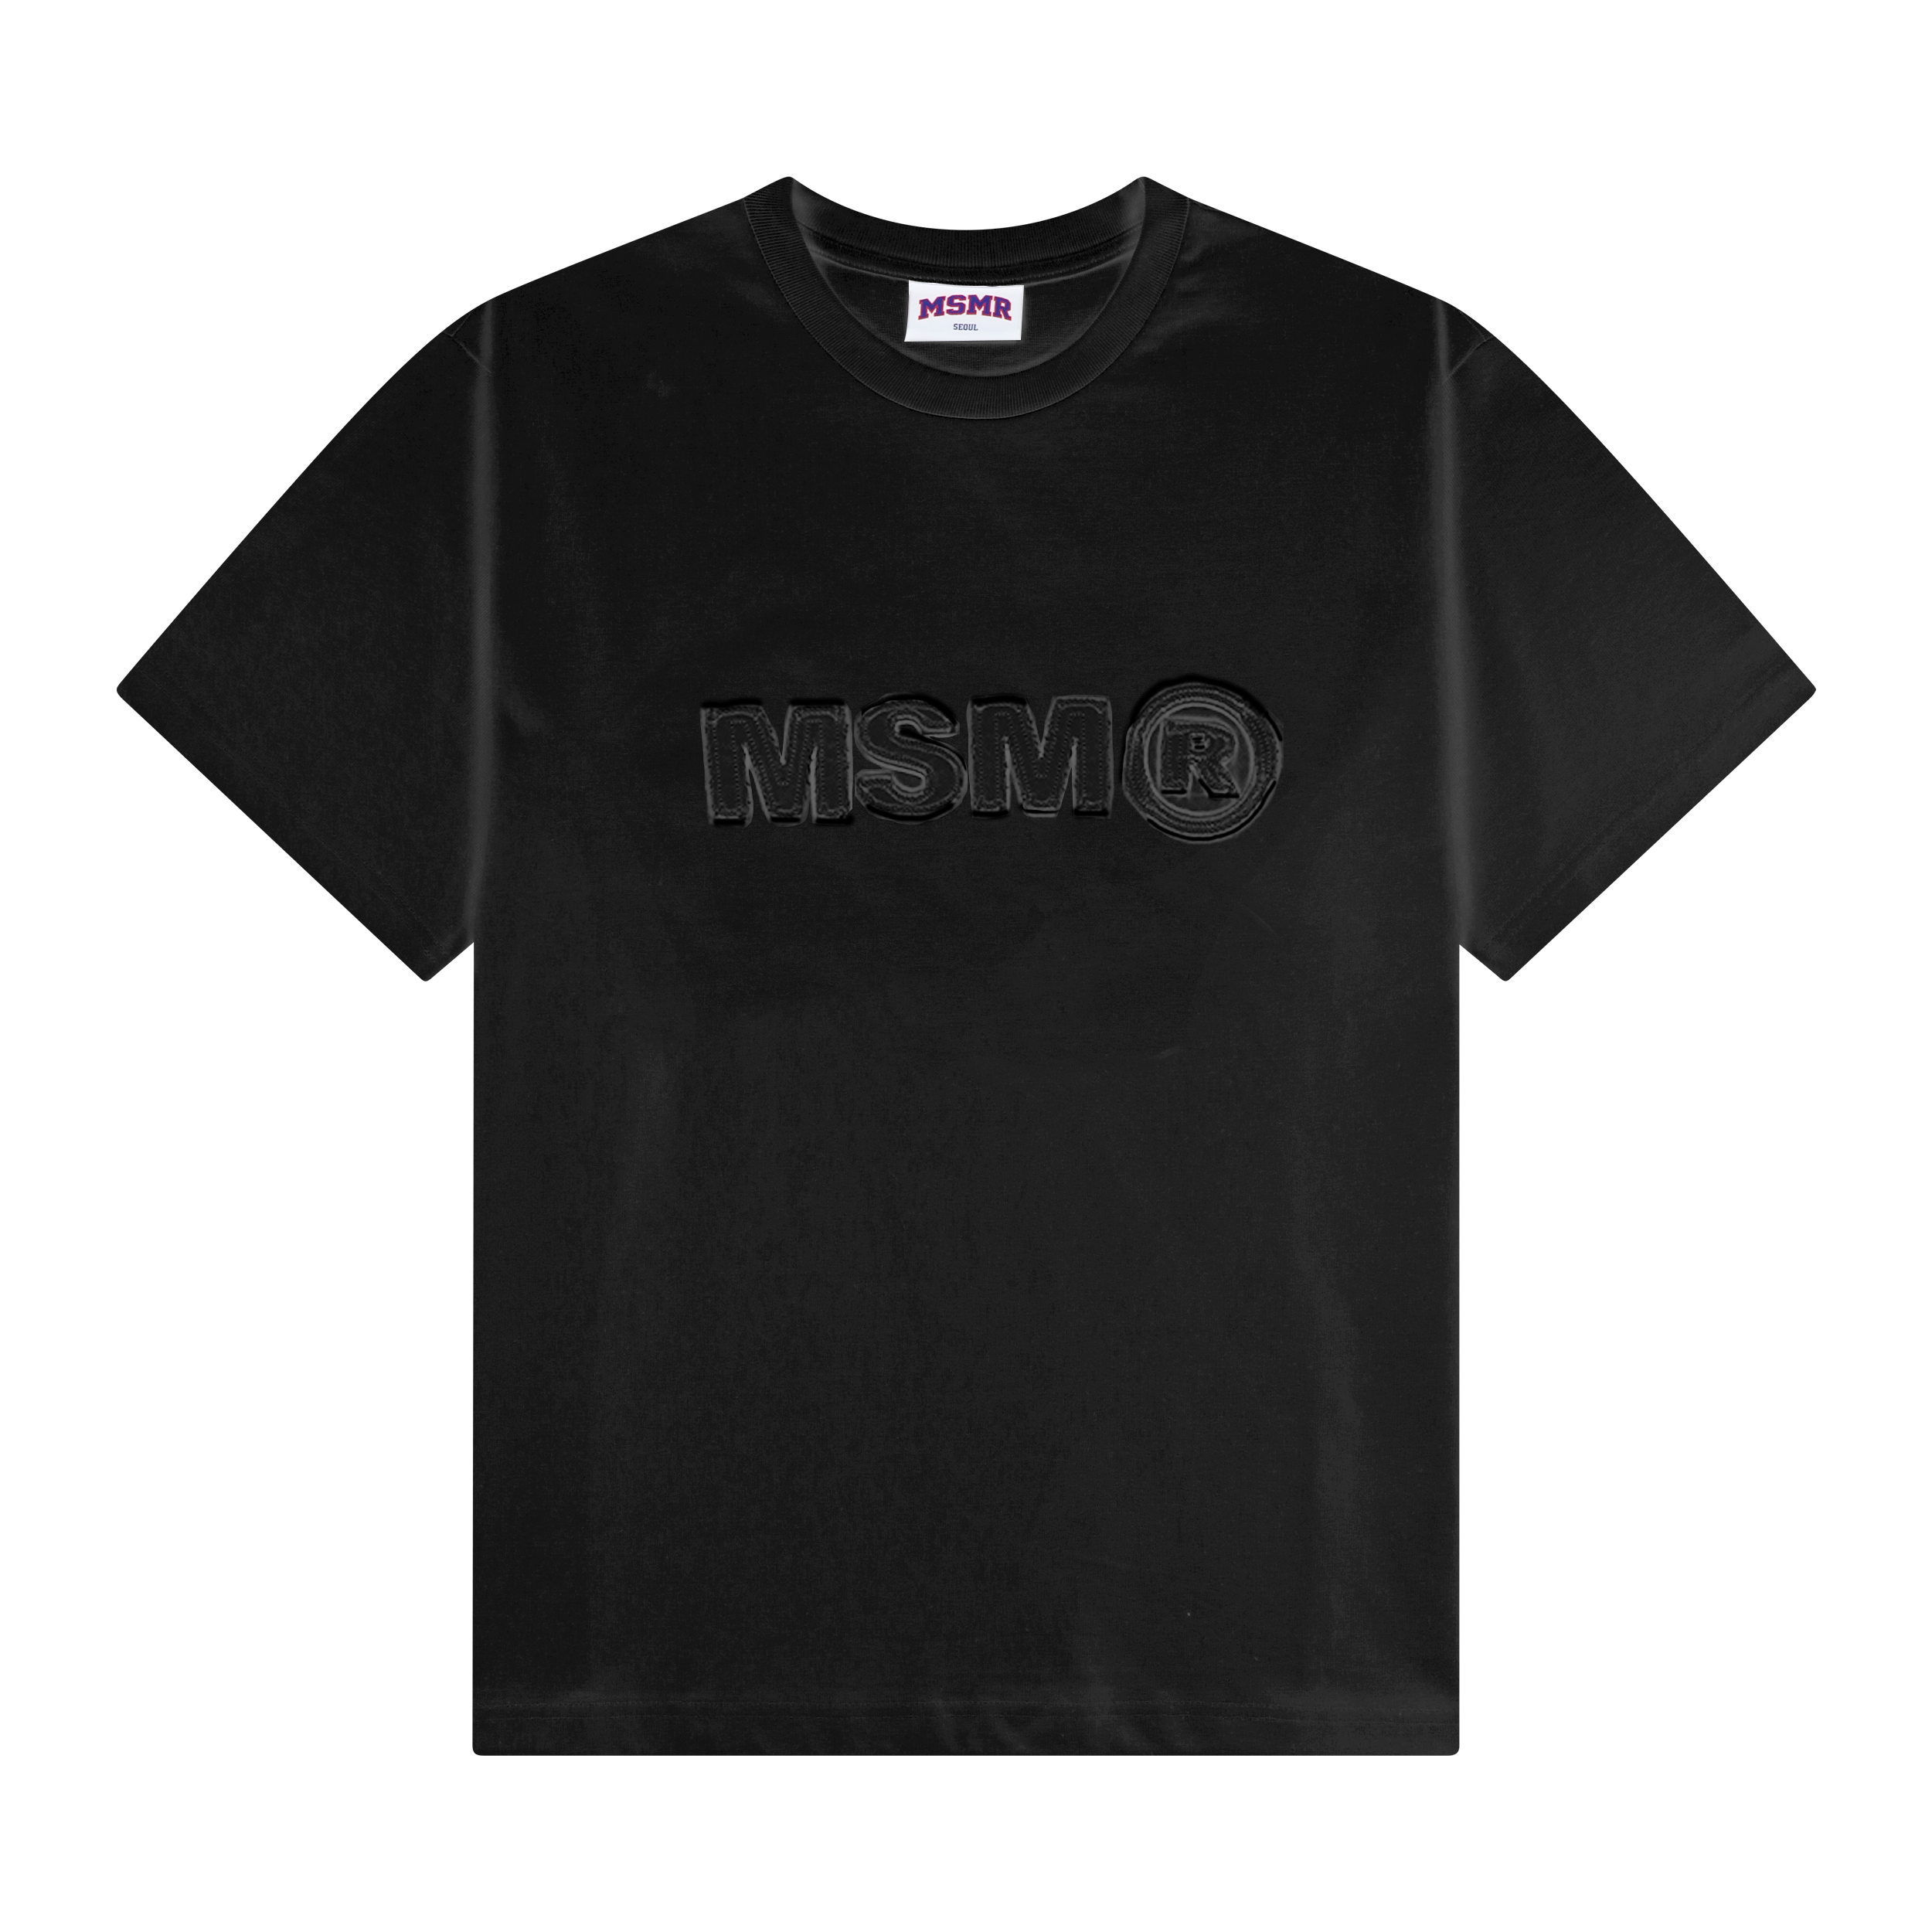 MSMR Patch Logo T-shirt Mint